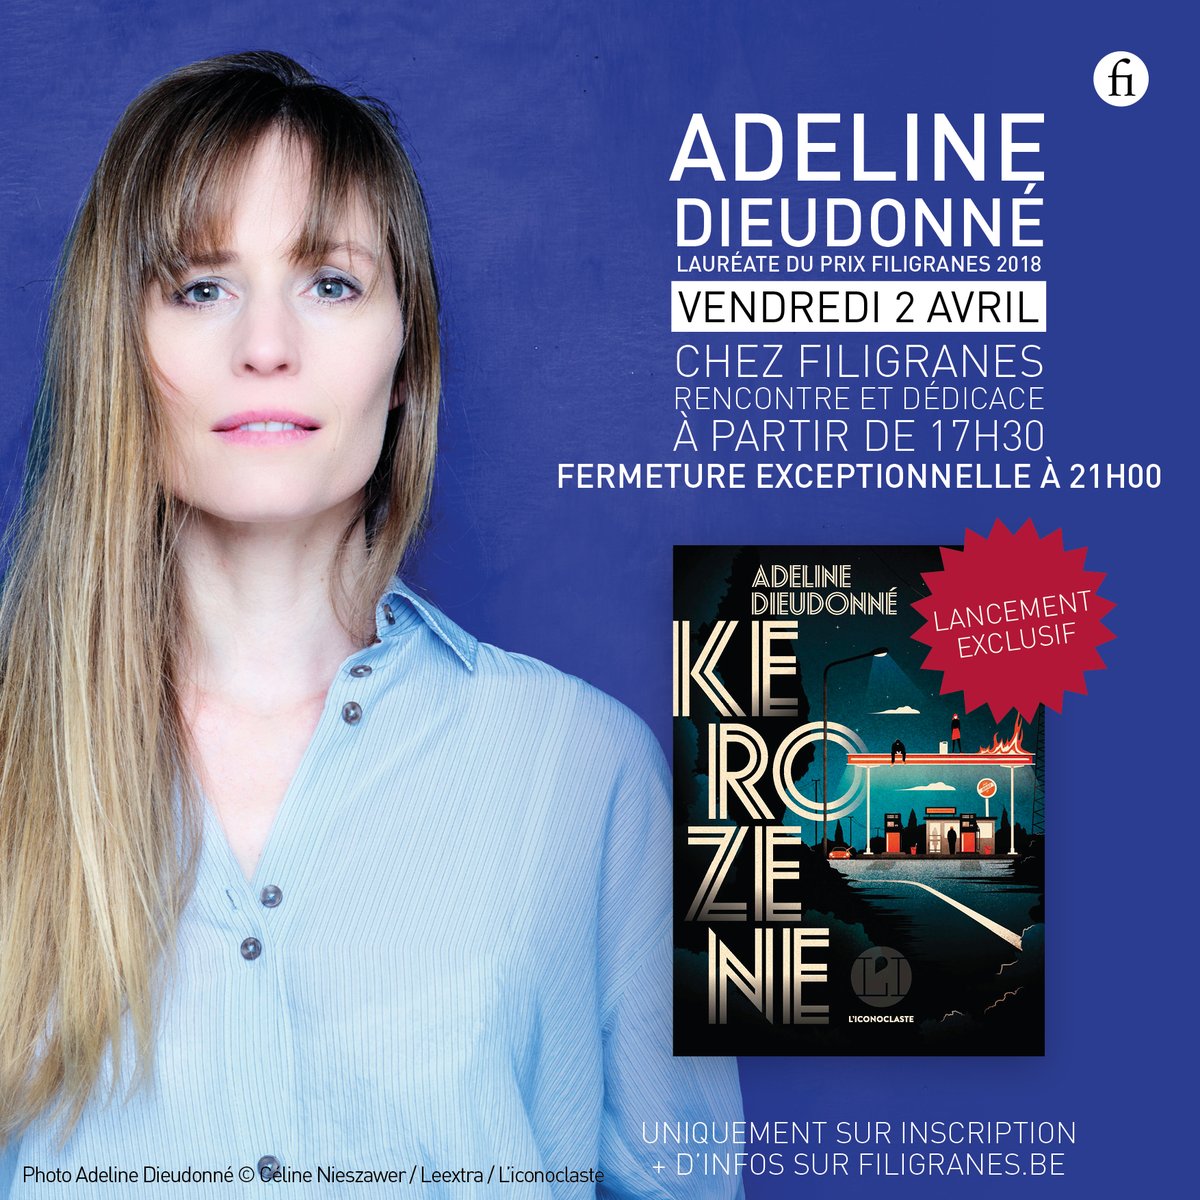 LA DEDICACE DE LA SEMAINE ! Ce vendredi 2 avril à partir de 17h30, Adeline Dieudonné en dédicace exceptionnelle pour le lancement de « Kerozene » 🤩 📖 De belles surprises vous attendent ! 🍻🥂 ⚠️ EXCLUSIVEMENT SUR INSCRIPTIONS VIA bit.ly/210402-adeline… @Ed_Iconoclaste